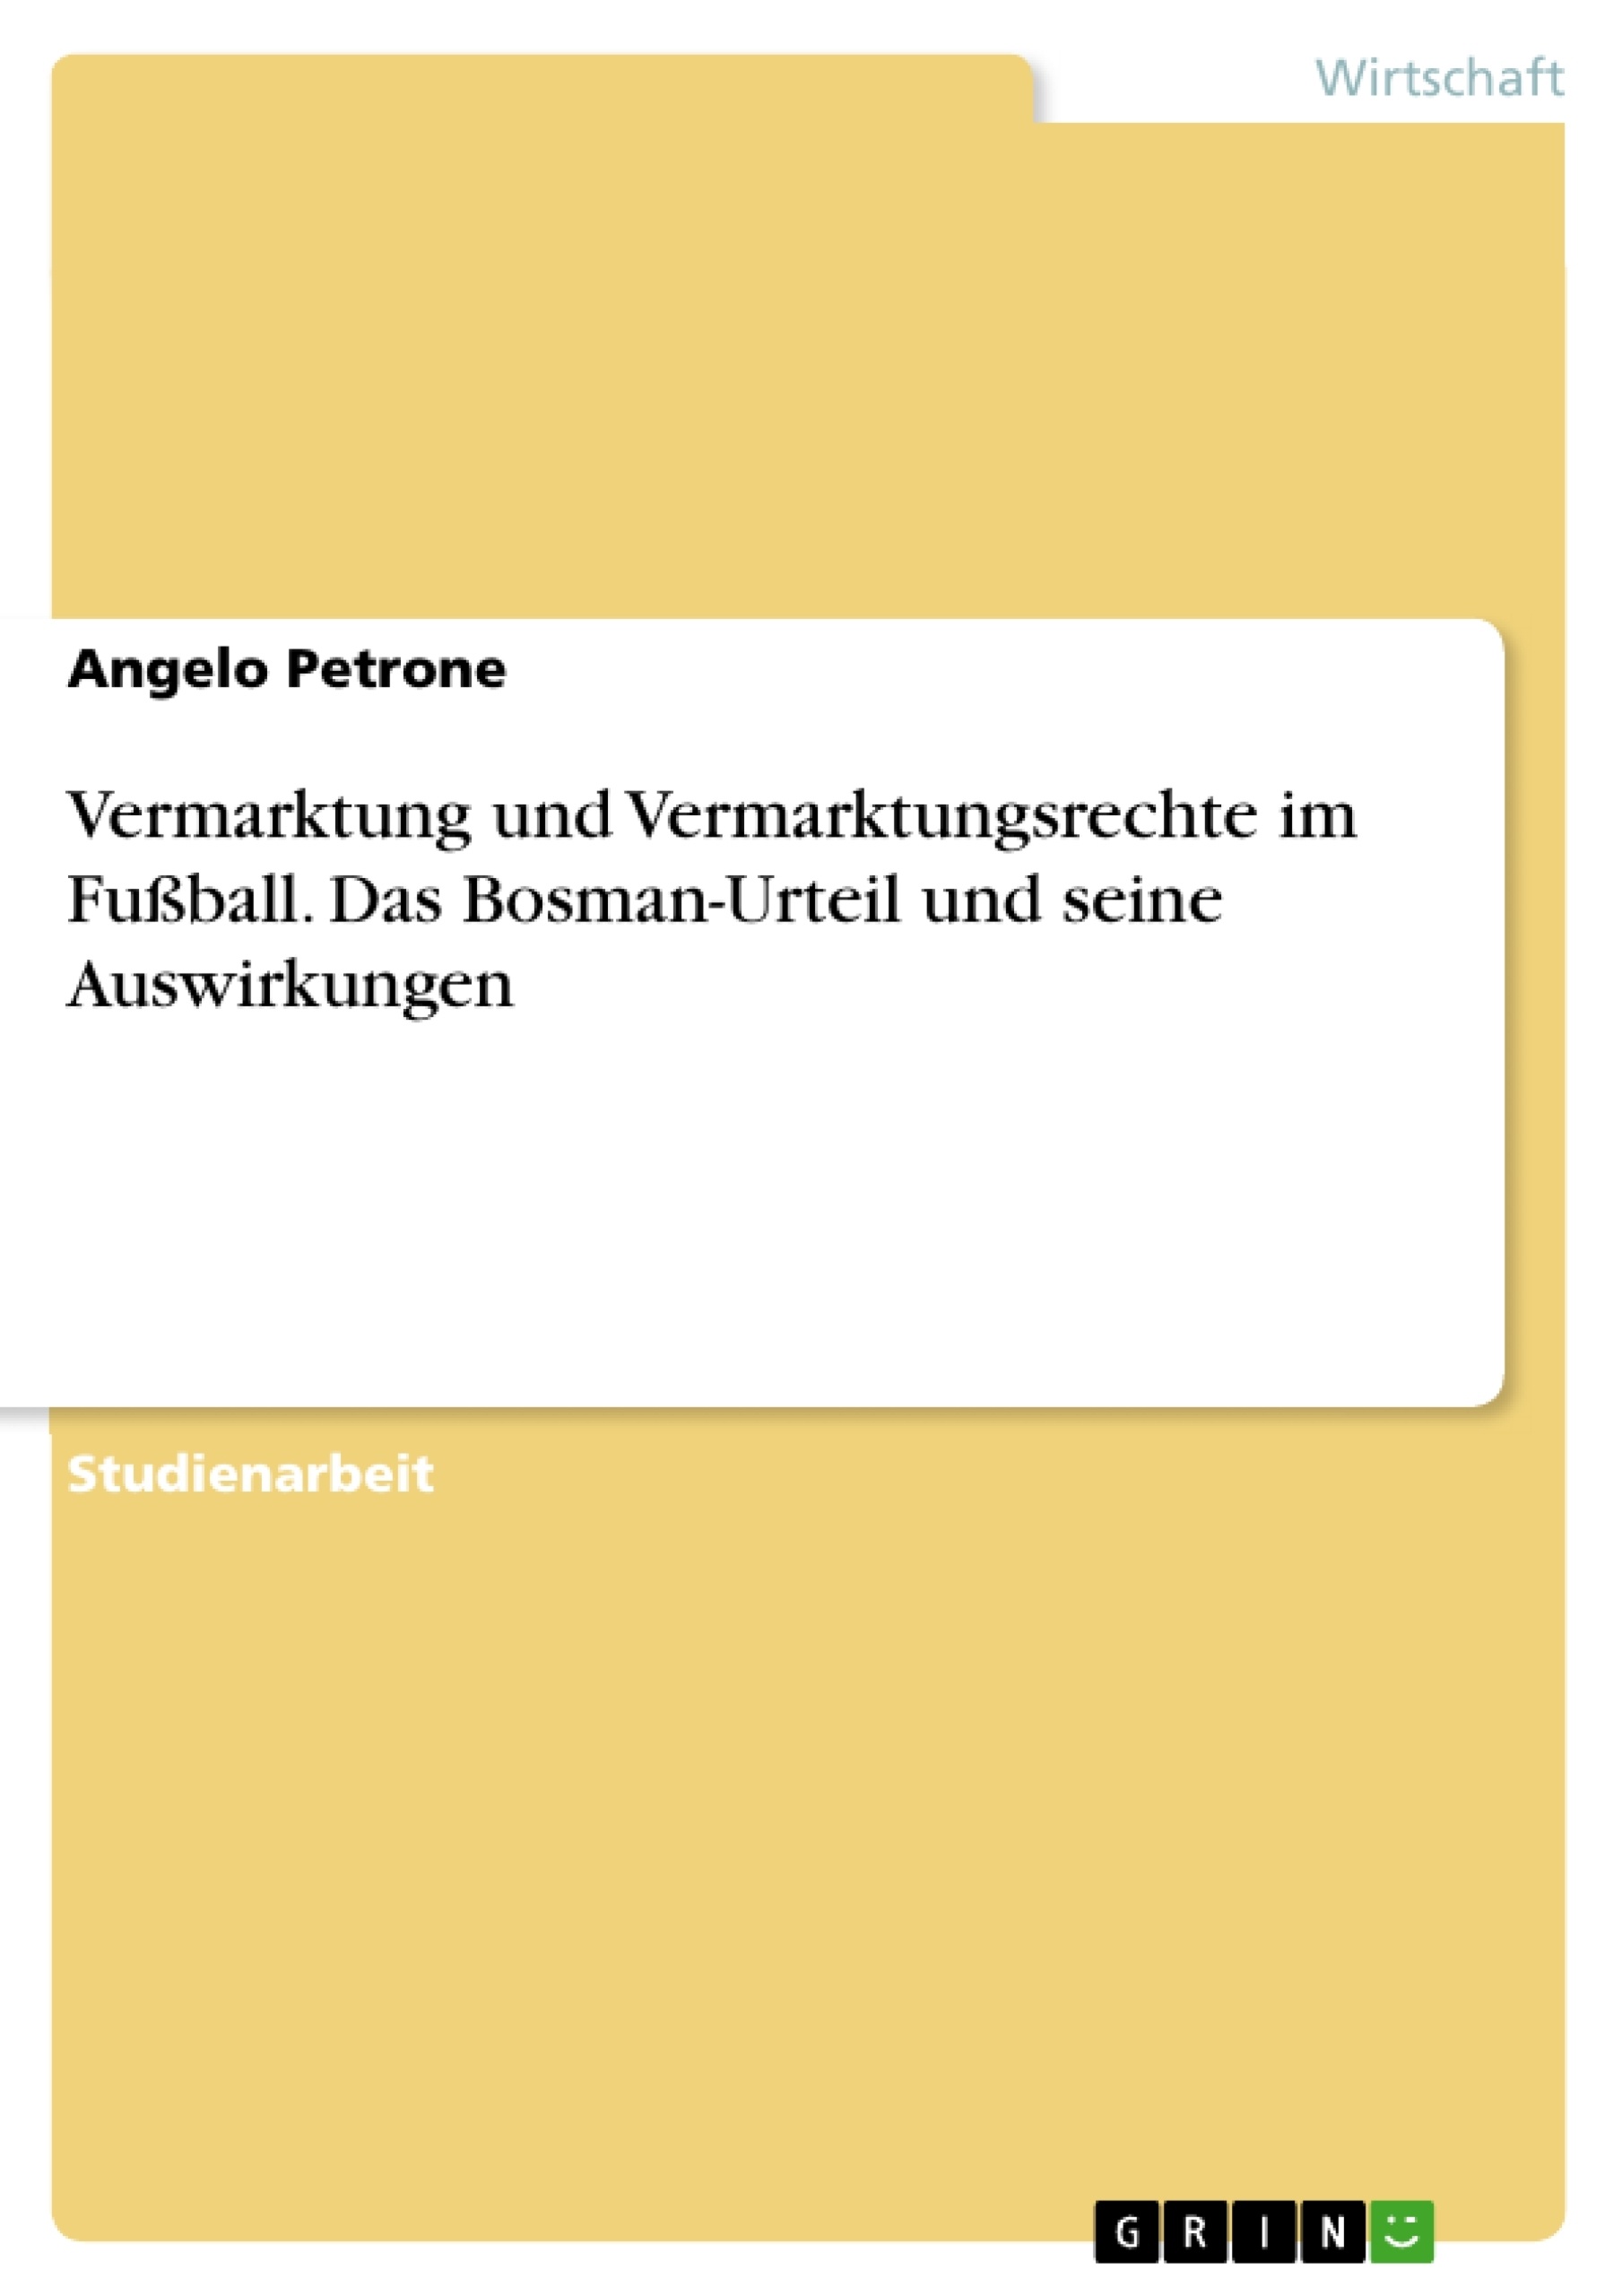 Titre: Vermarktung und Vermarktungsrechte im Fußball. Das Bosman-Urteil und seine Auswirkungen